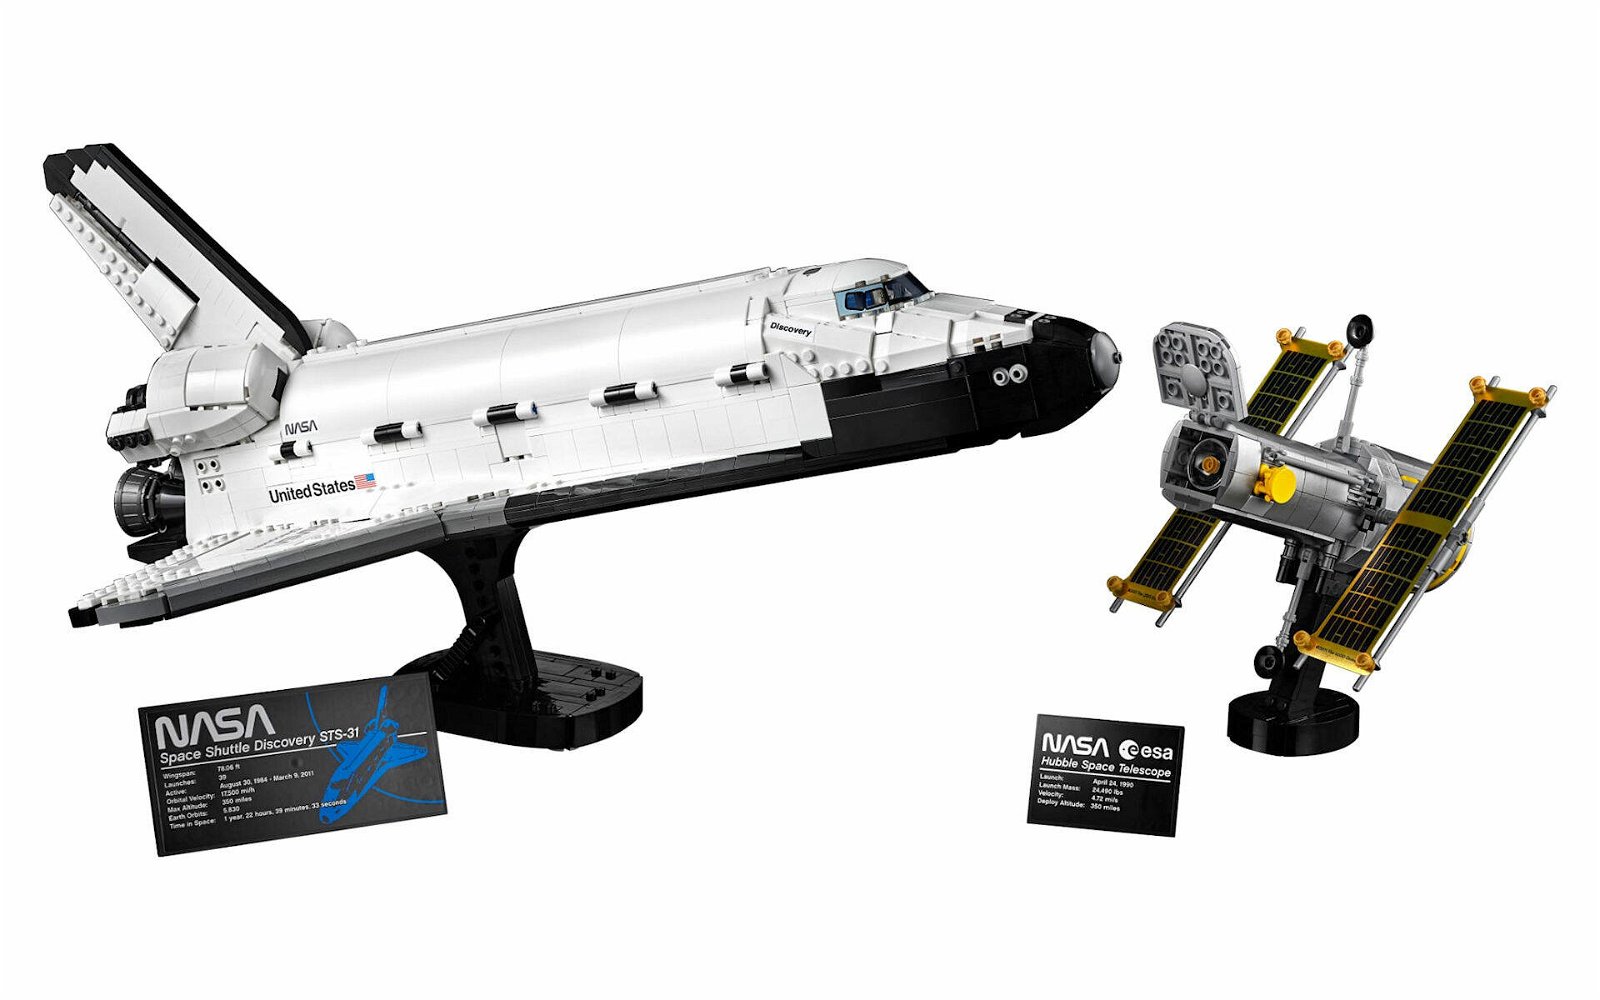 Immagine di LEGO MANIA, una puntata... spaziale! Costruiamo insieme il Discovery!